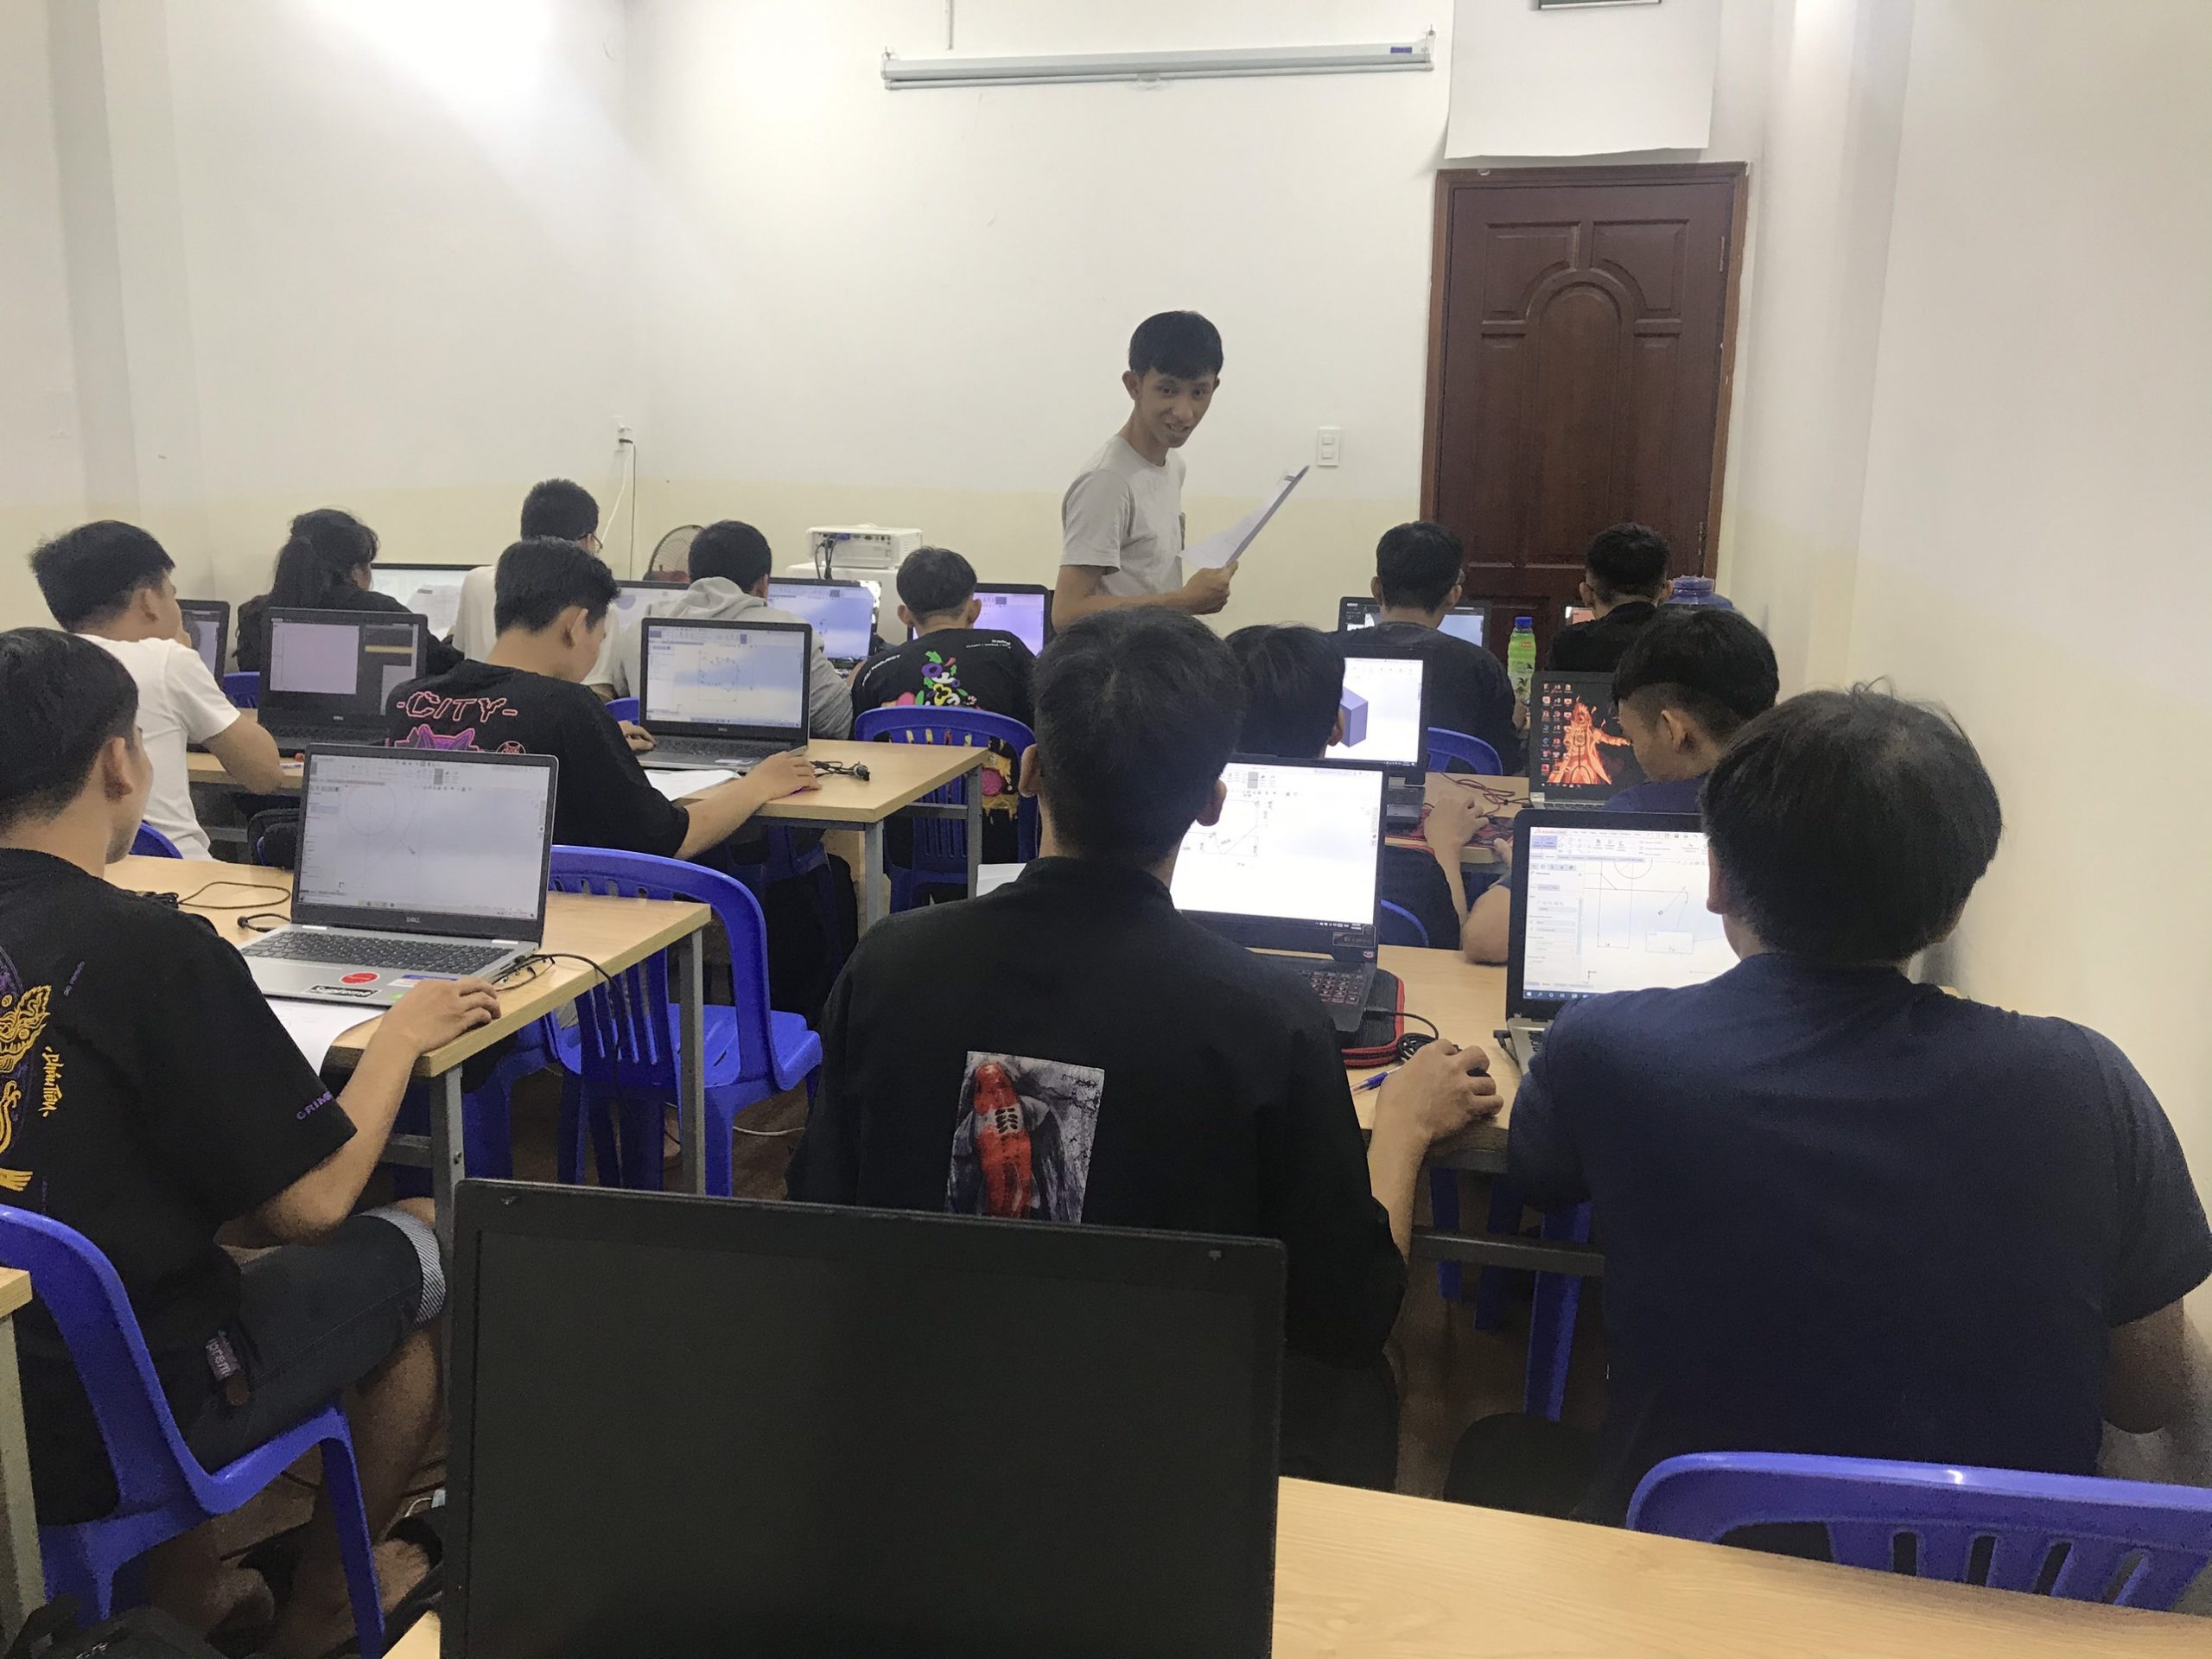 Khoá học Solidworks ở Bắc Ninh